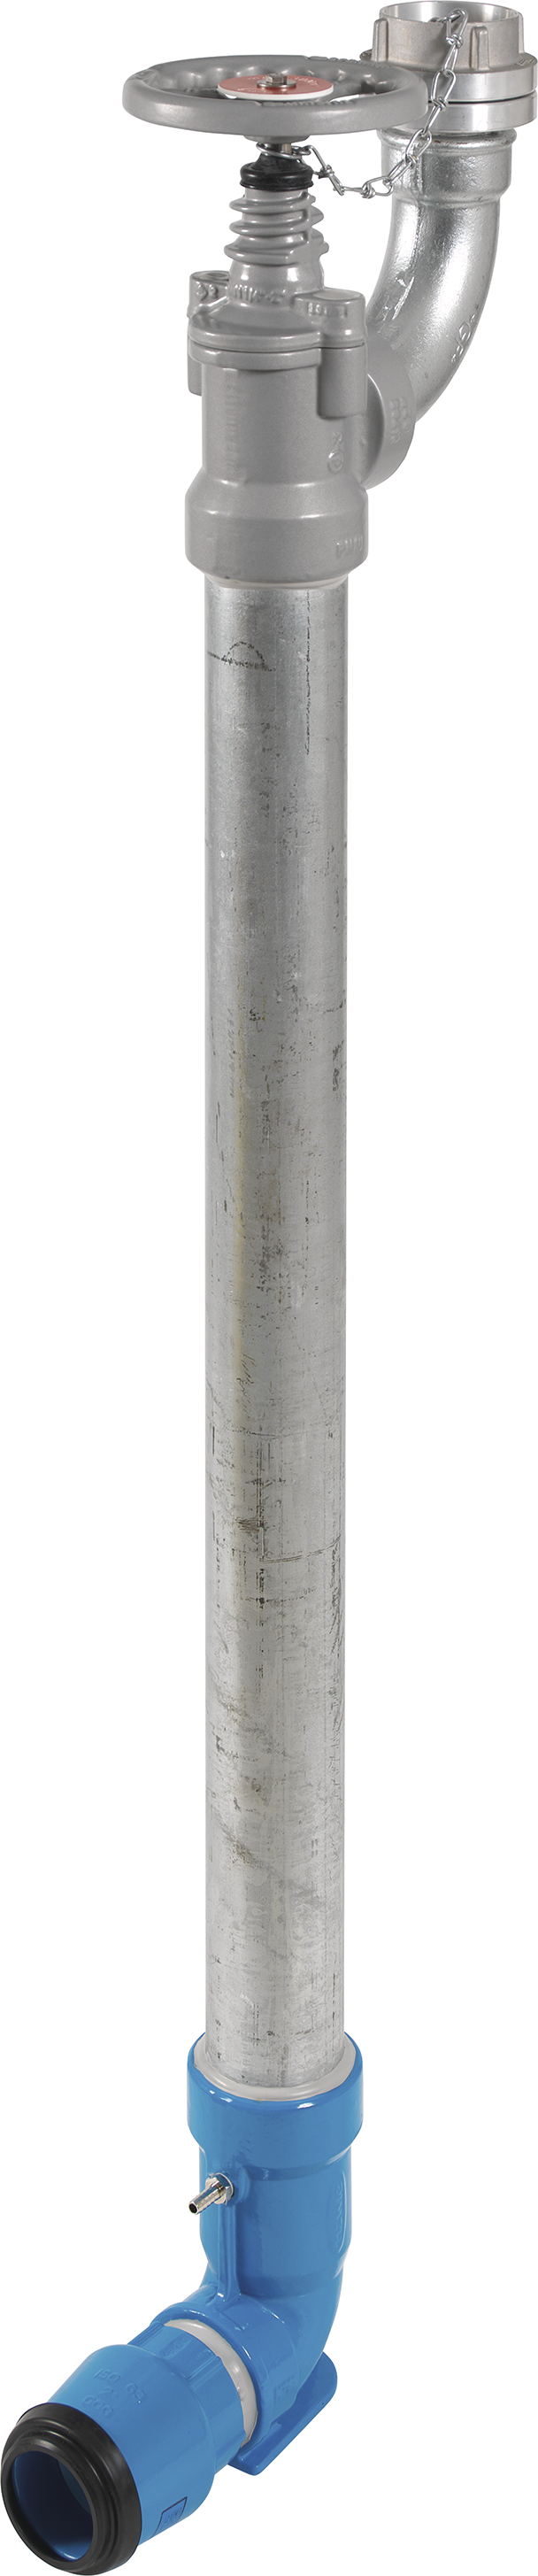 Bewässerungshydrant Unterflur N767 d 63mm, L = 1600mm - Hawle Hydranten